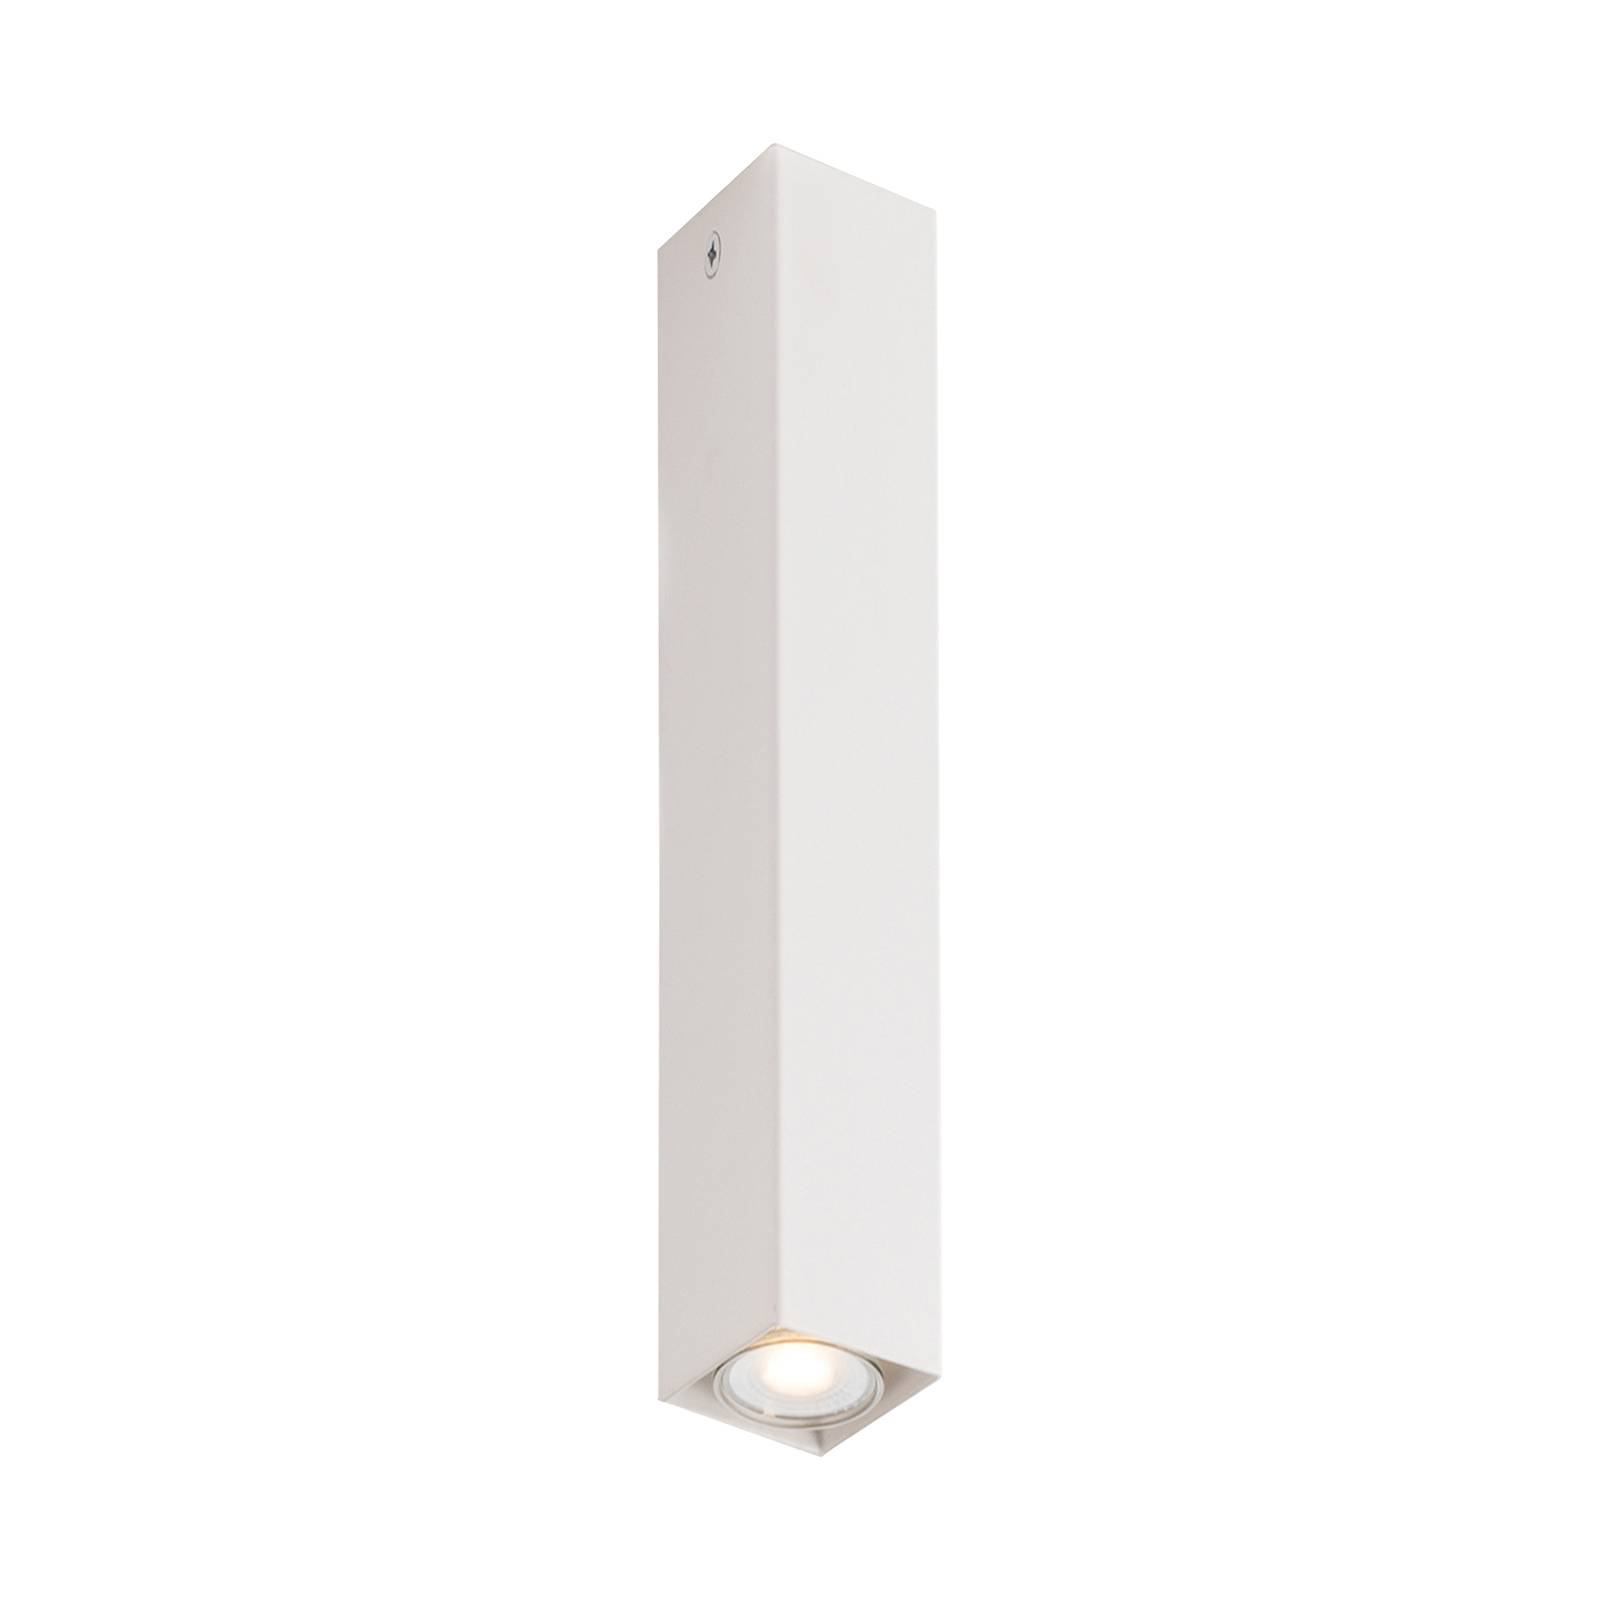 Eco-Light Downlight Fluke de forme angulaire hauteur 40 cm blanc